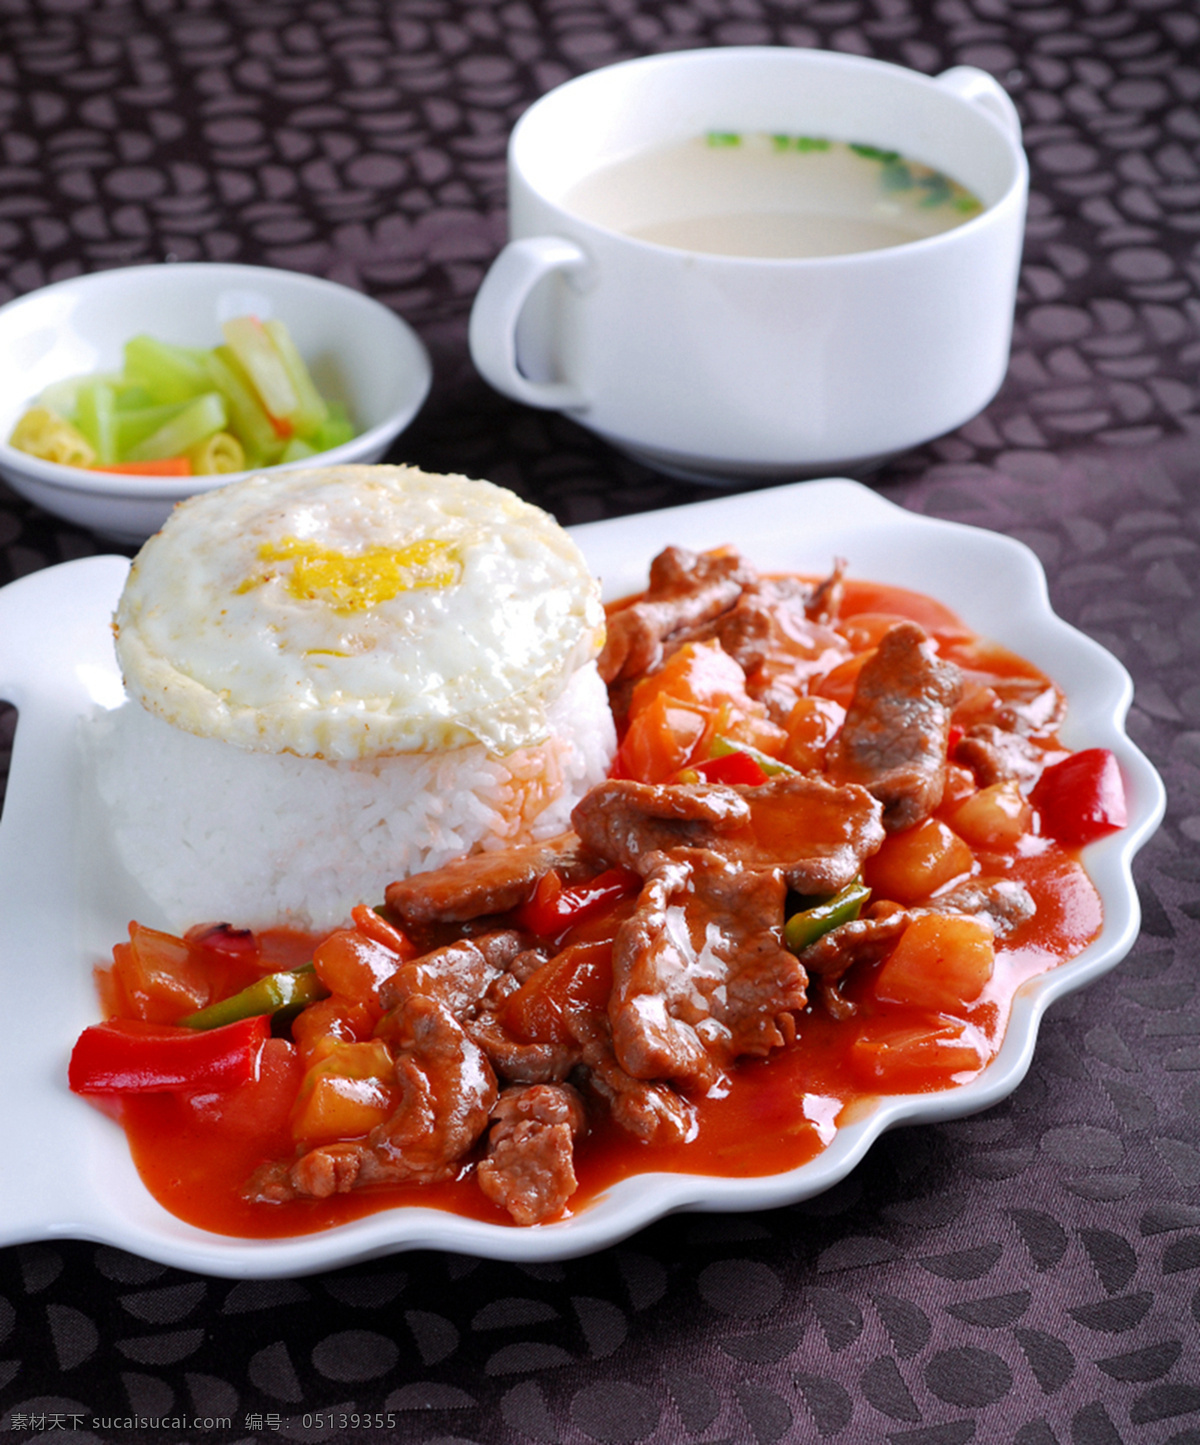 蕃茄牛肉烩饭 美食 传统美食 餐饮美食 高清菜谱用图